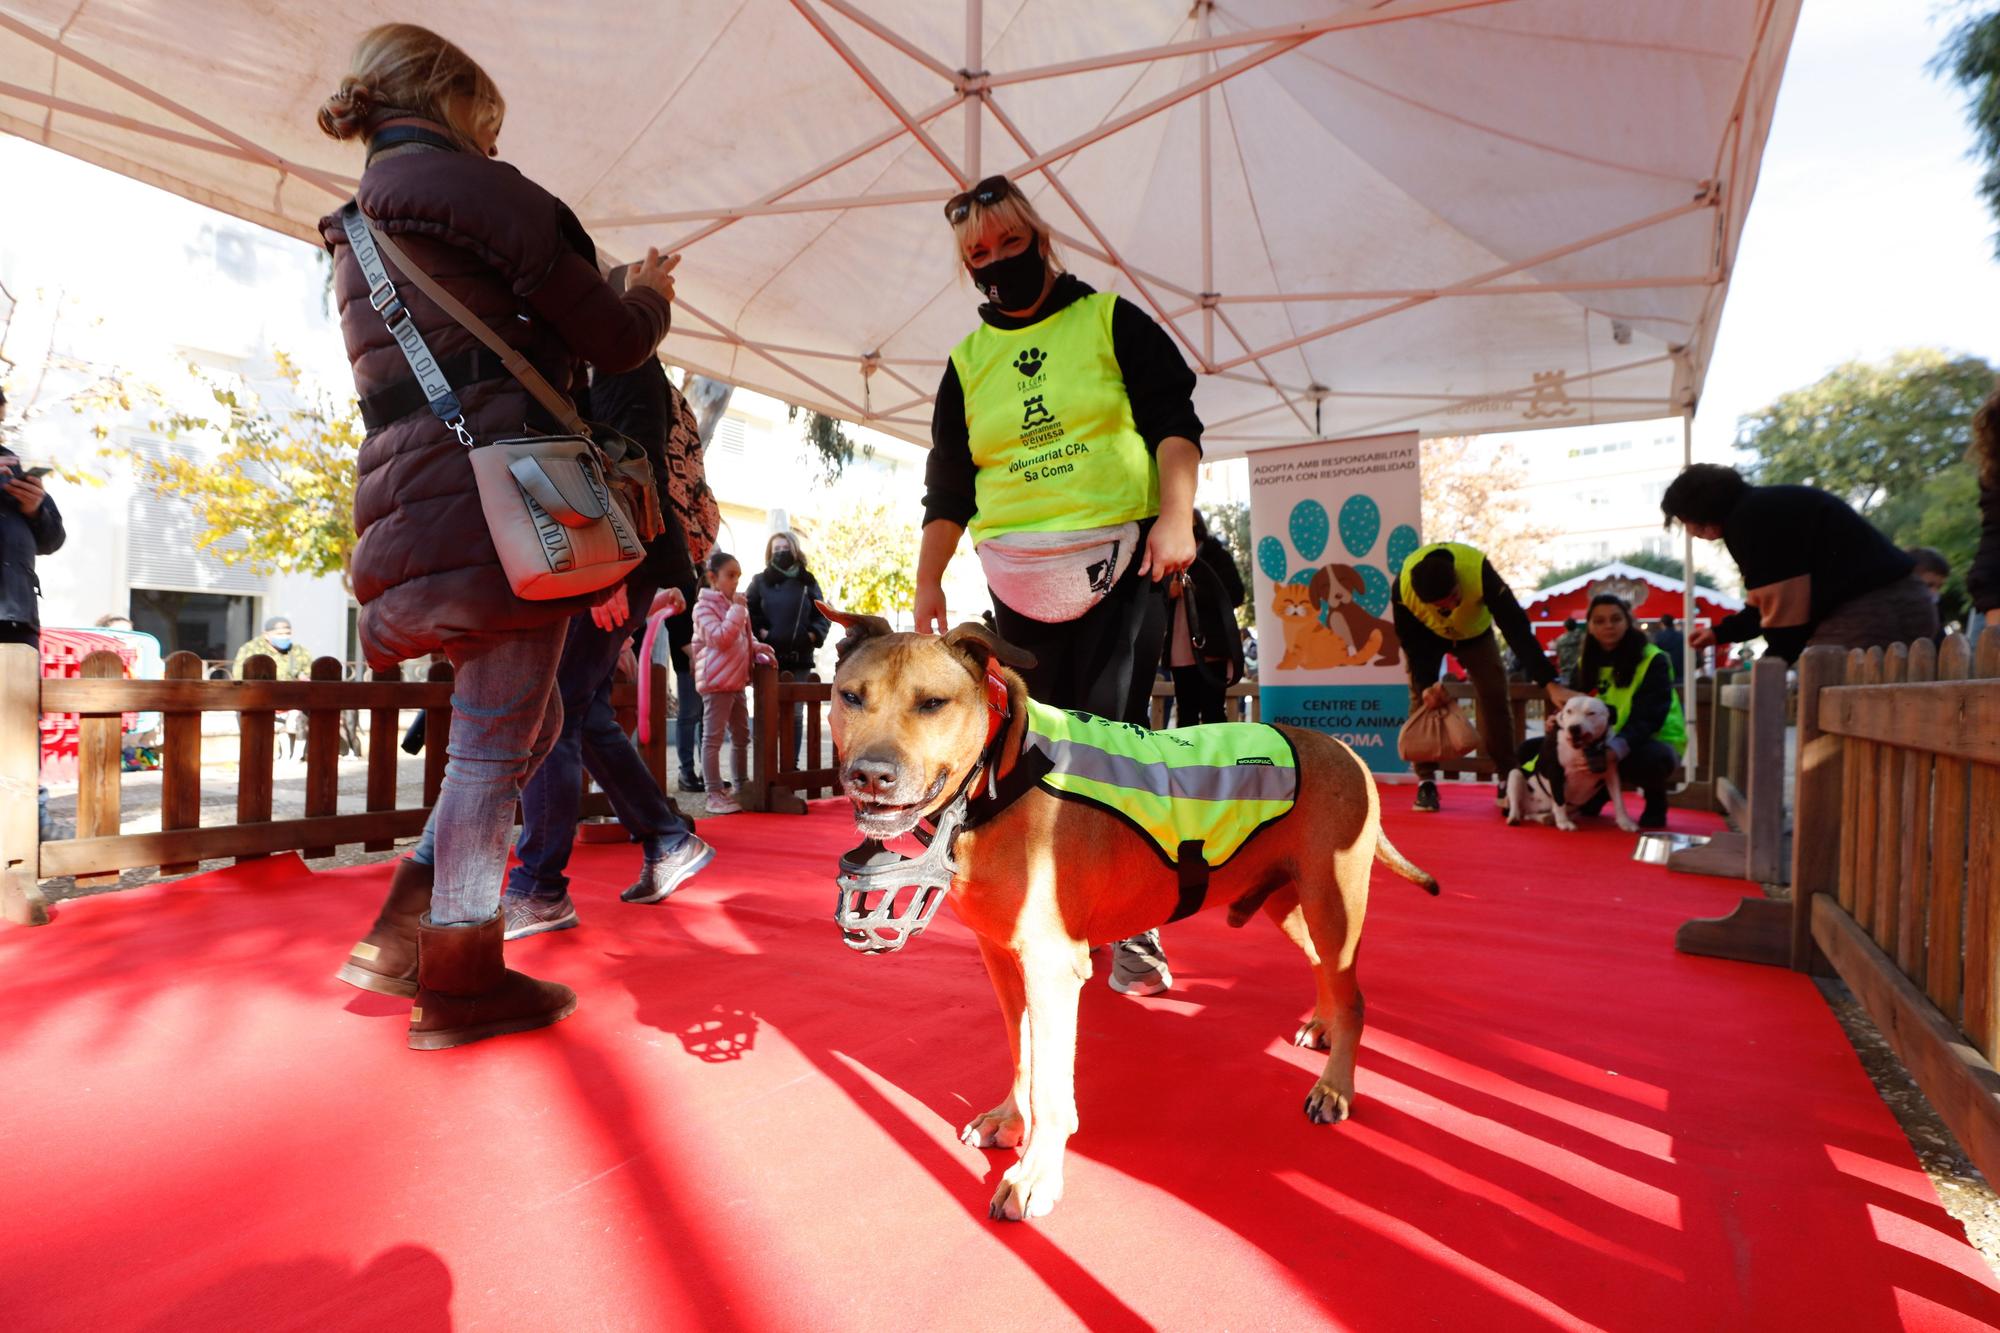 Jornada de adopción de perros en Ibiza